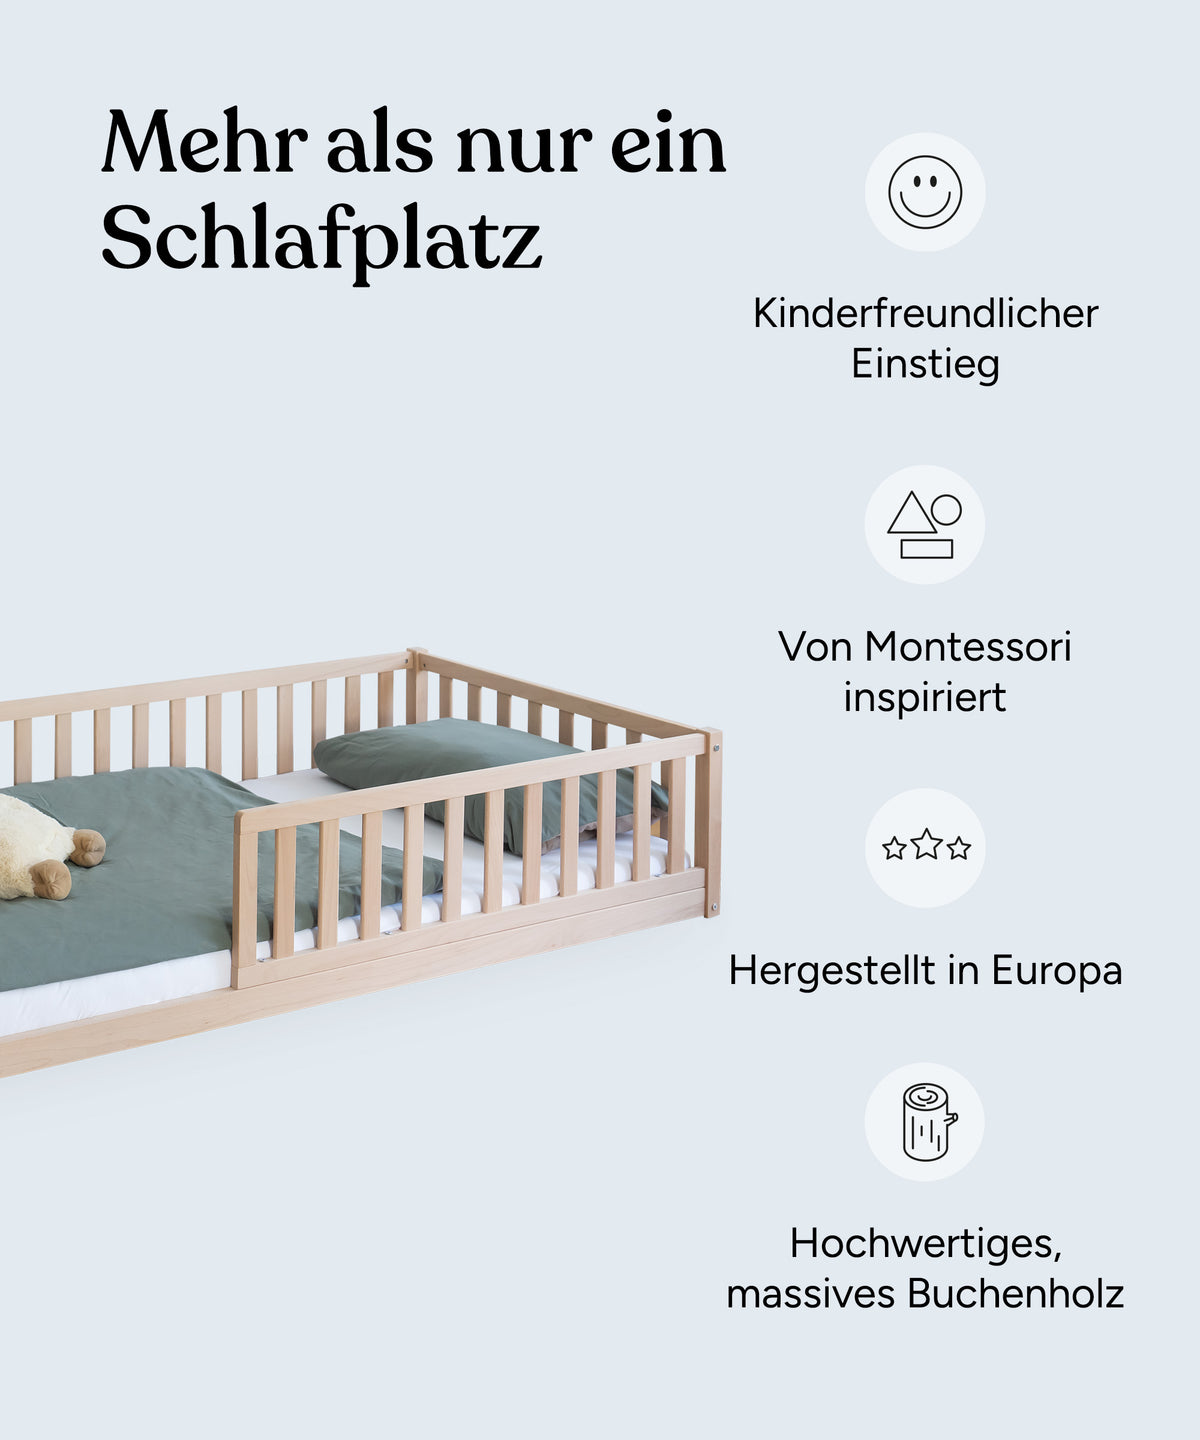 Vorteile Bodenbett: Kinderfreundlicher Einstieg, von Montessori inspiriert, hergestellt in Europa, hochwertiges und massives Buchenholz.